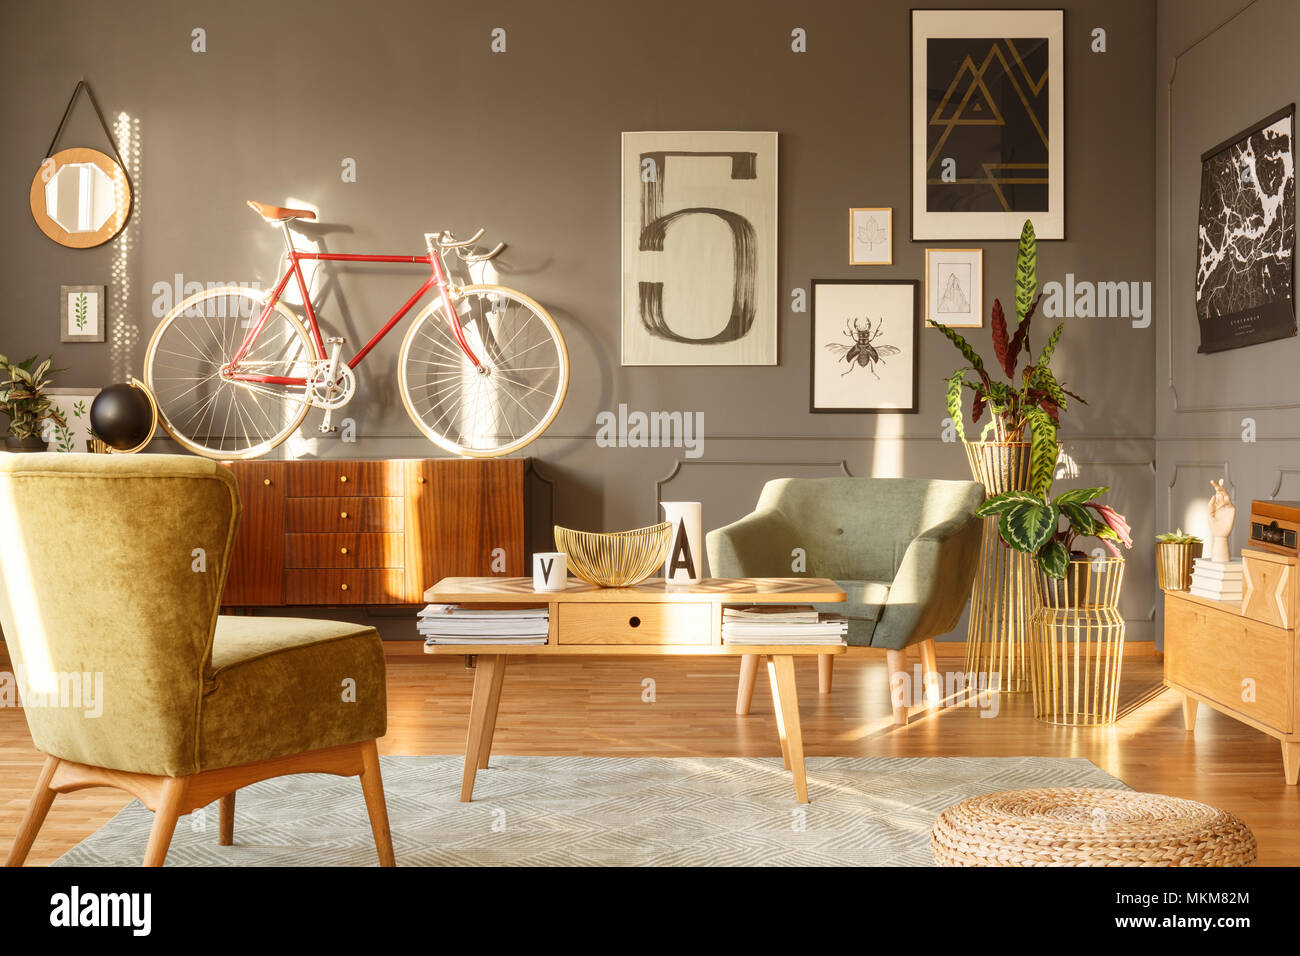 Table en bois et un fauteuil vert sur tapis gris en vintage salon intérieur avec vélo rouge sur l'armoire Banque D'Images